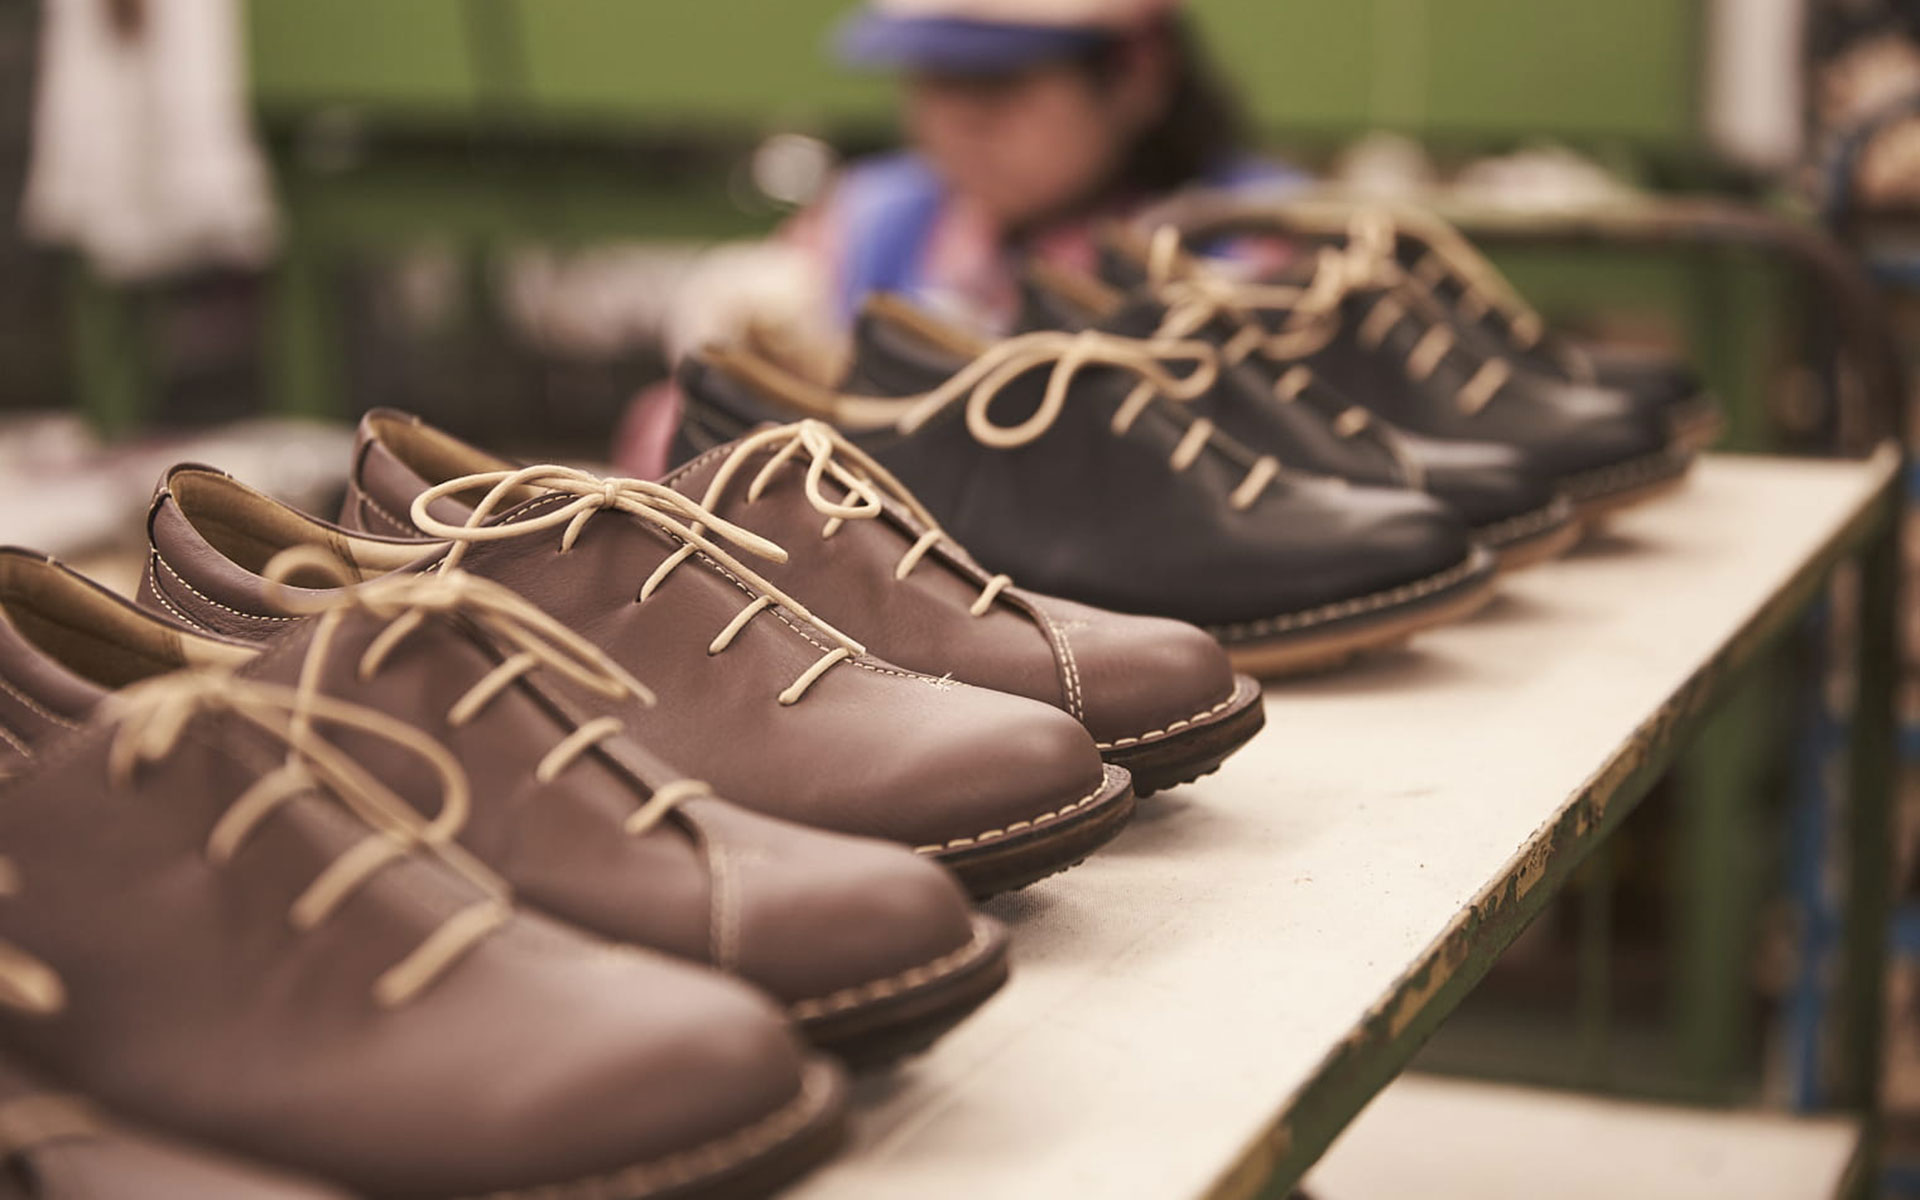 歩きやすく、疲れにくい革靴を。靴職人の理想を形にした「SLOW FACTORY」の日常靴